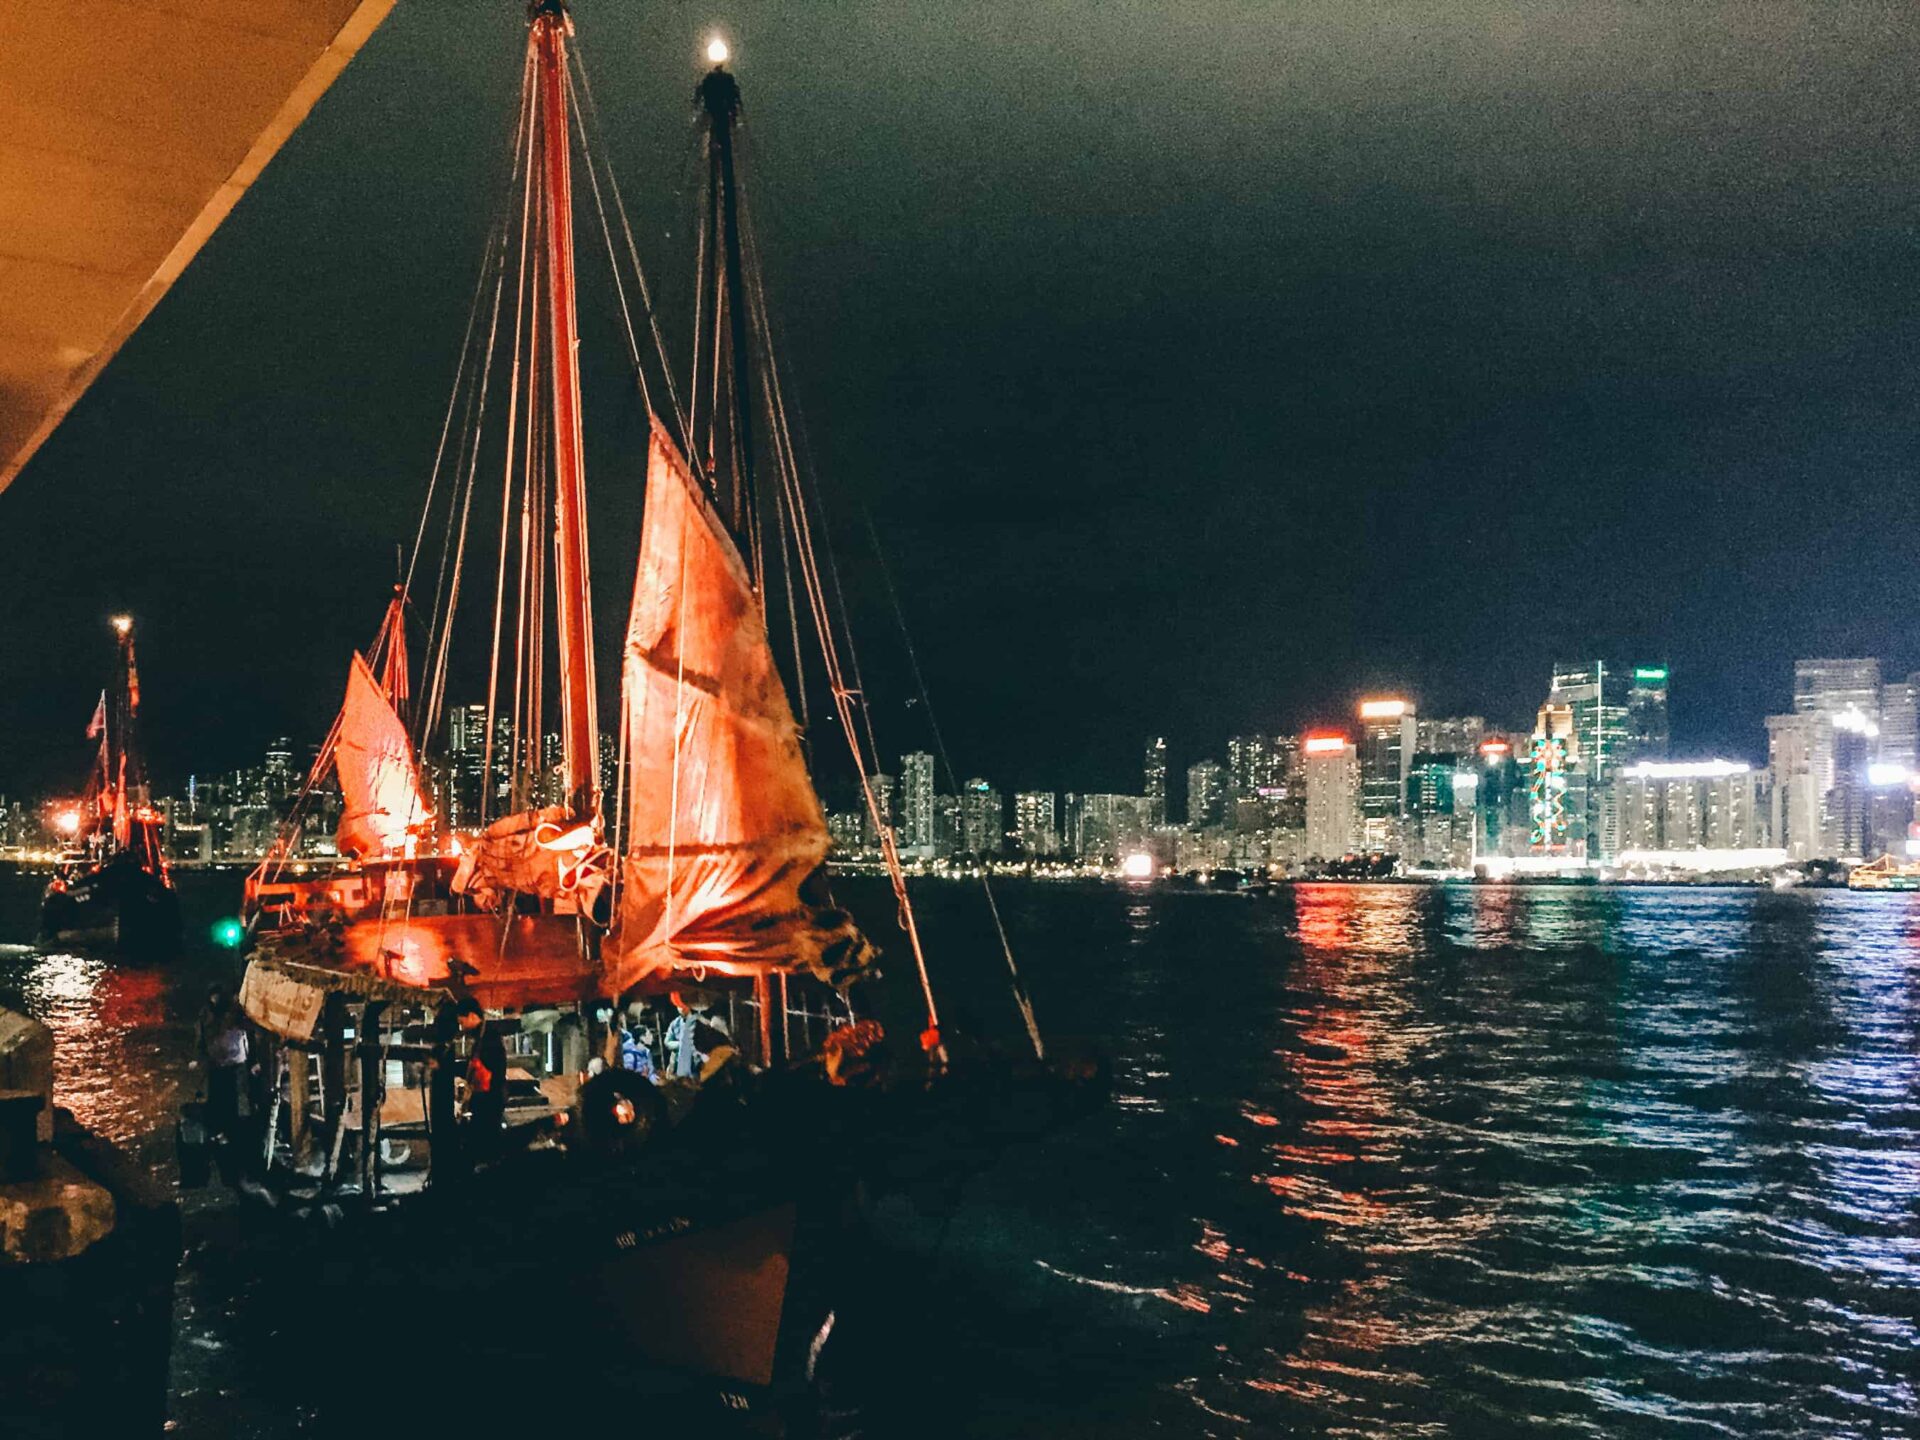 Hong Kong - Dukling